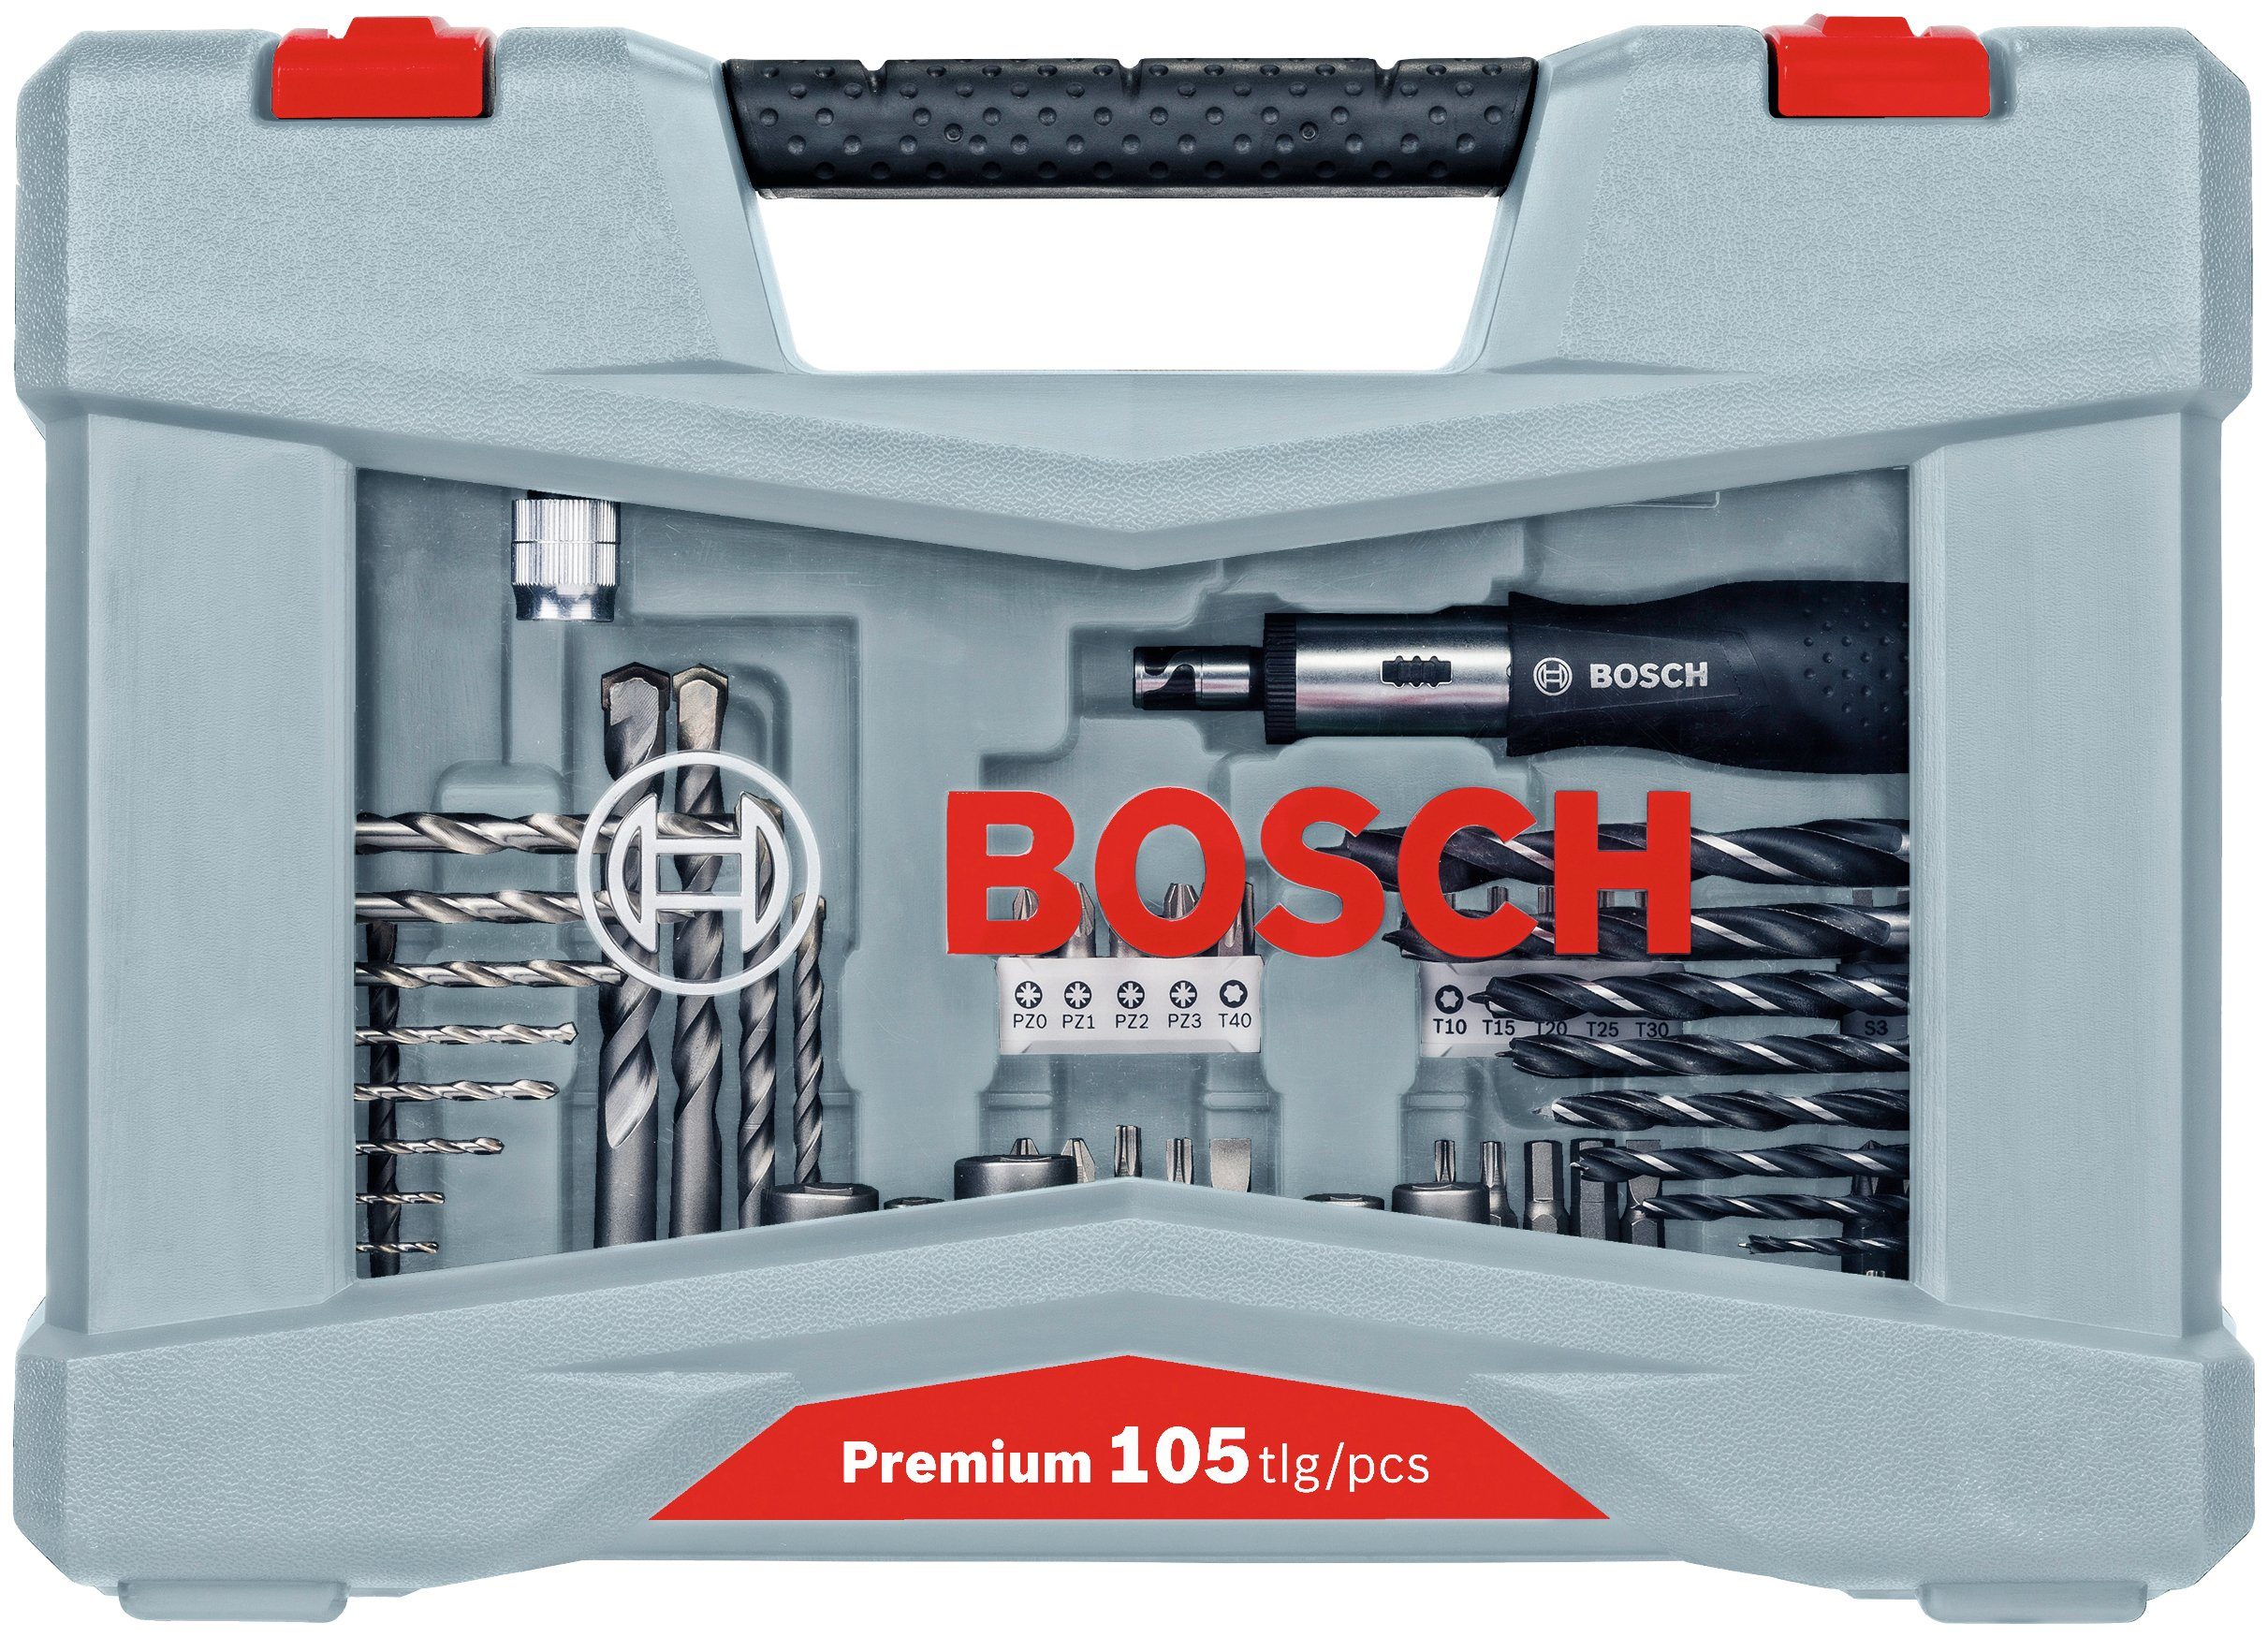 105-teilig Professional Bitset Bohrer- und Premium X-Line, Bosch